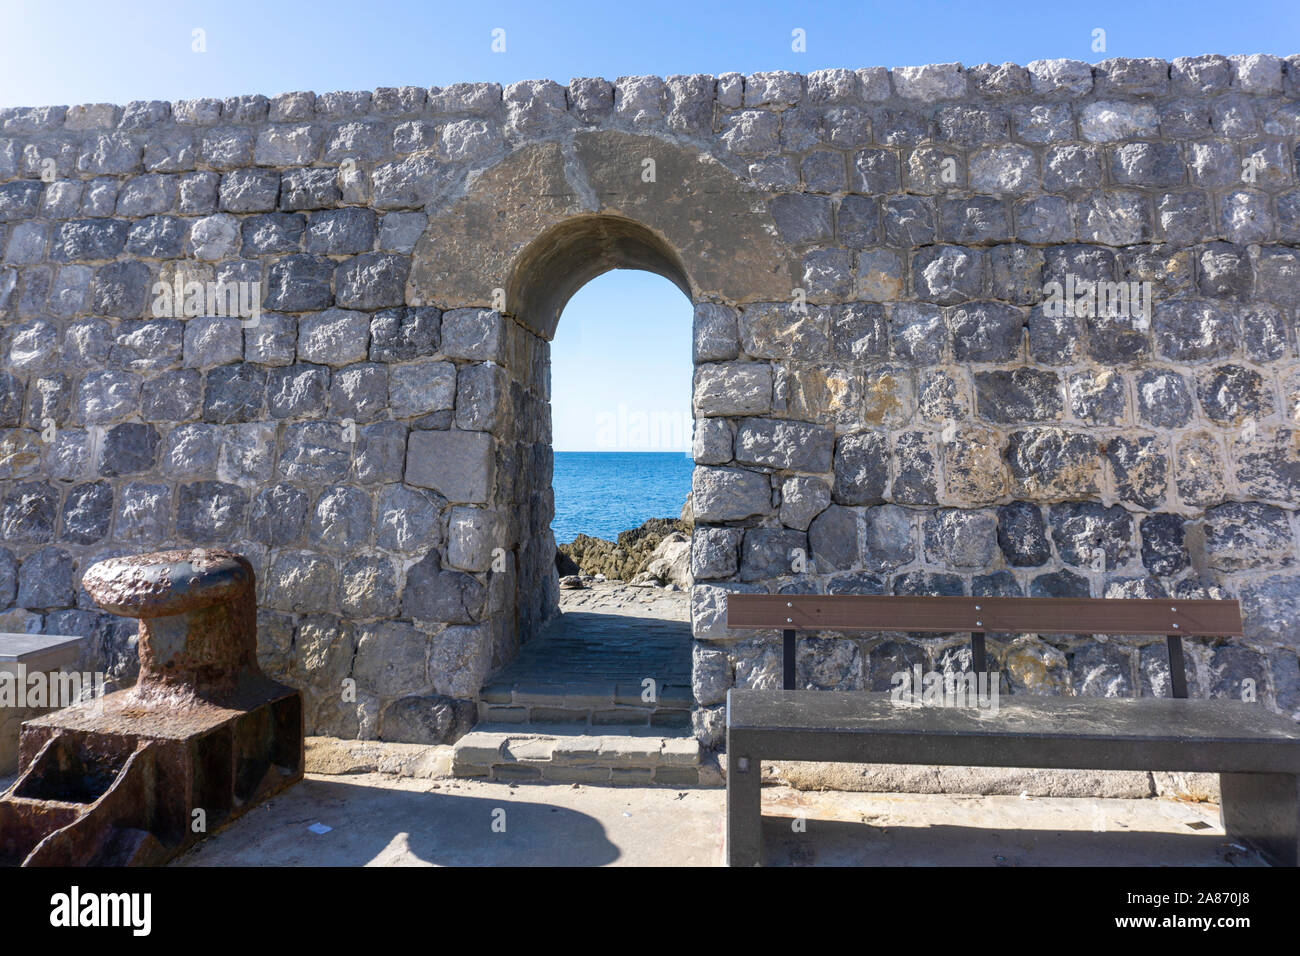 Sur la jetée de Cefalú, Sicile, Italie, un beau mur de pierre portant une arcade menant à la mer.avec un woo Banque D'Images